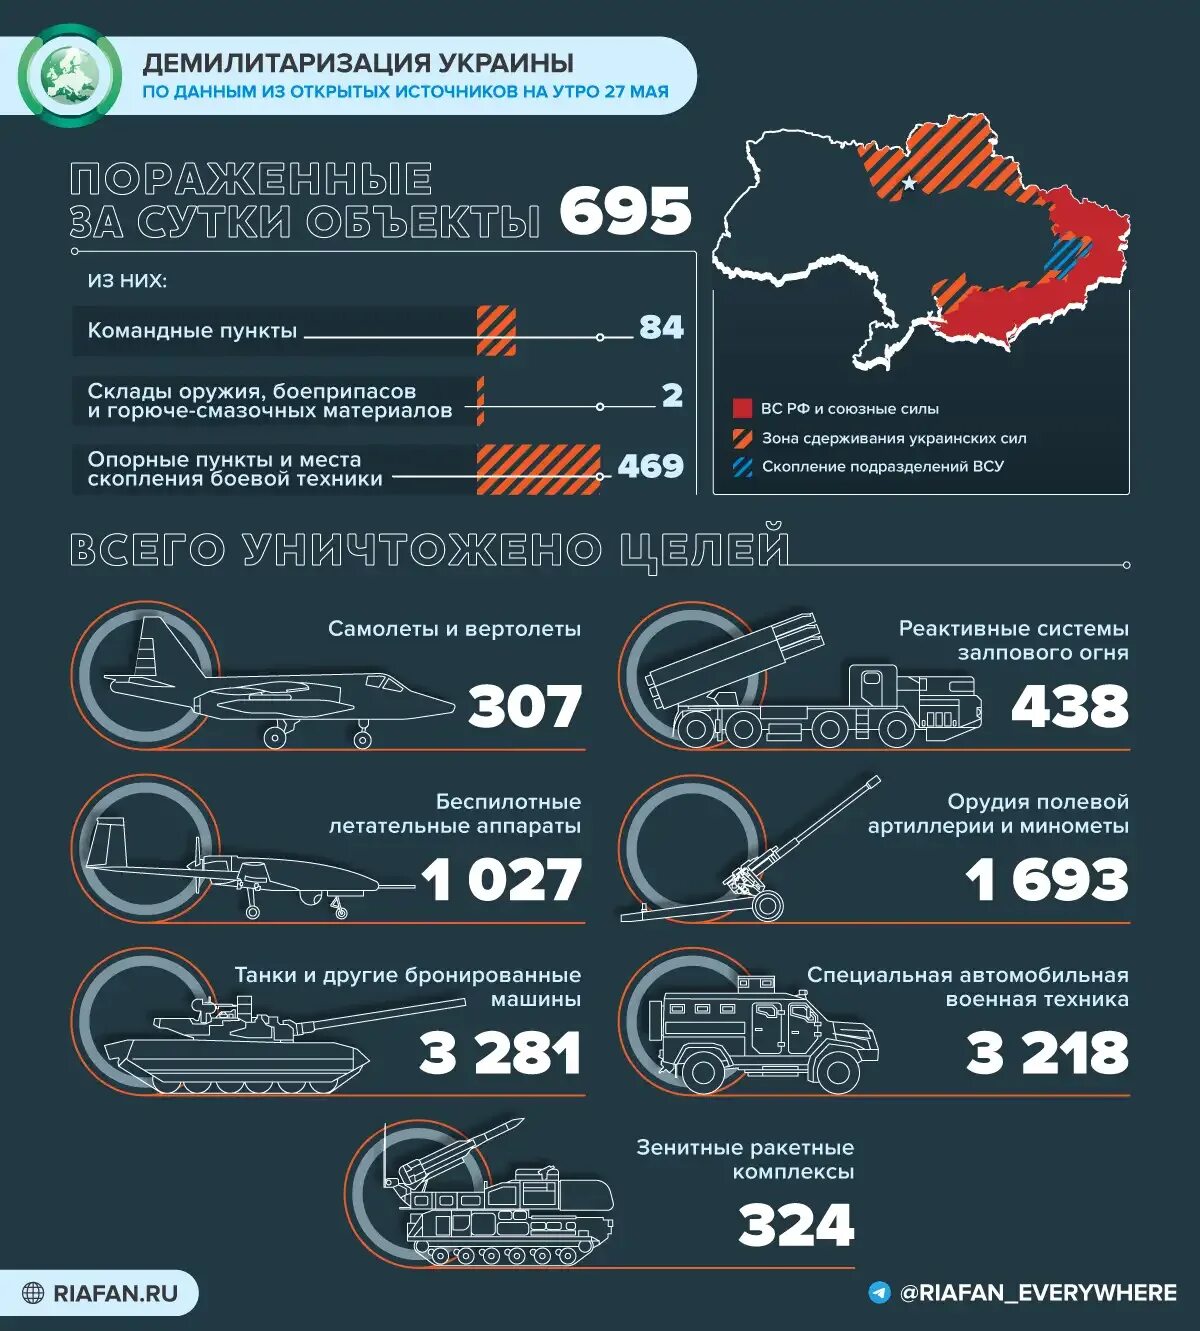 Сколько потерь на украине на сегодняшний. Поставки оружия на Украину инфографика. Потери Украины инфографика. Потери украинских войск 2022 инфографика.